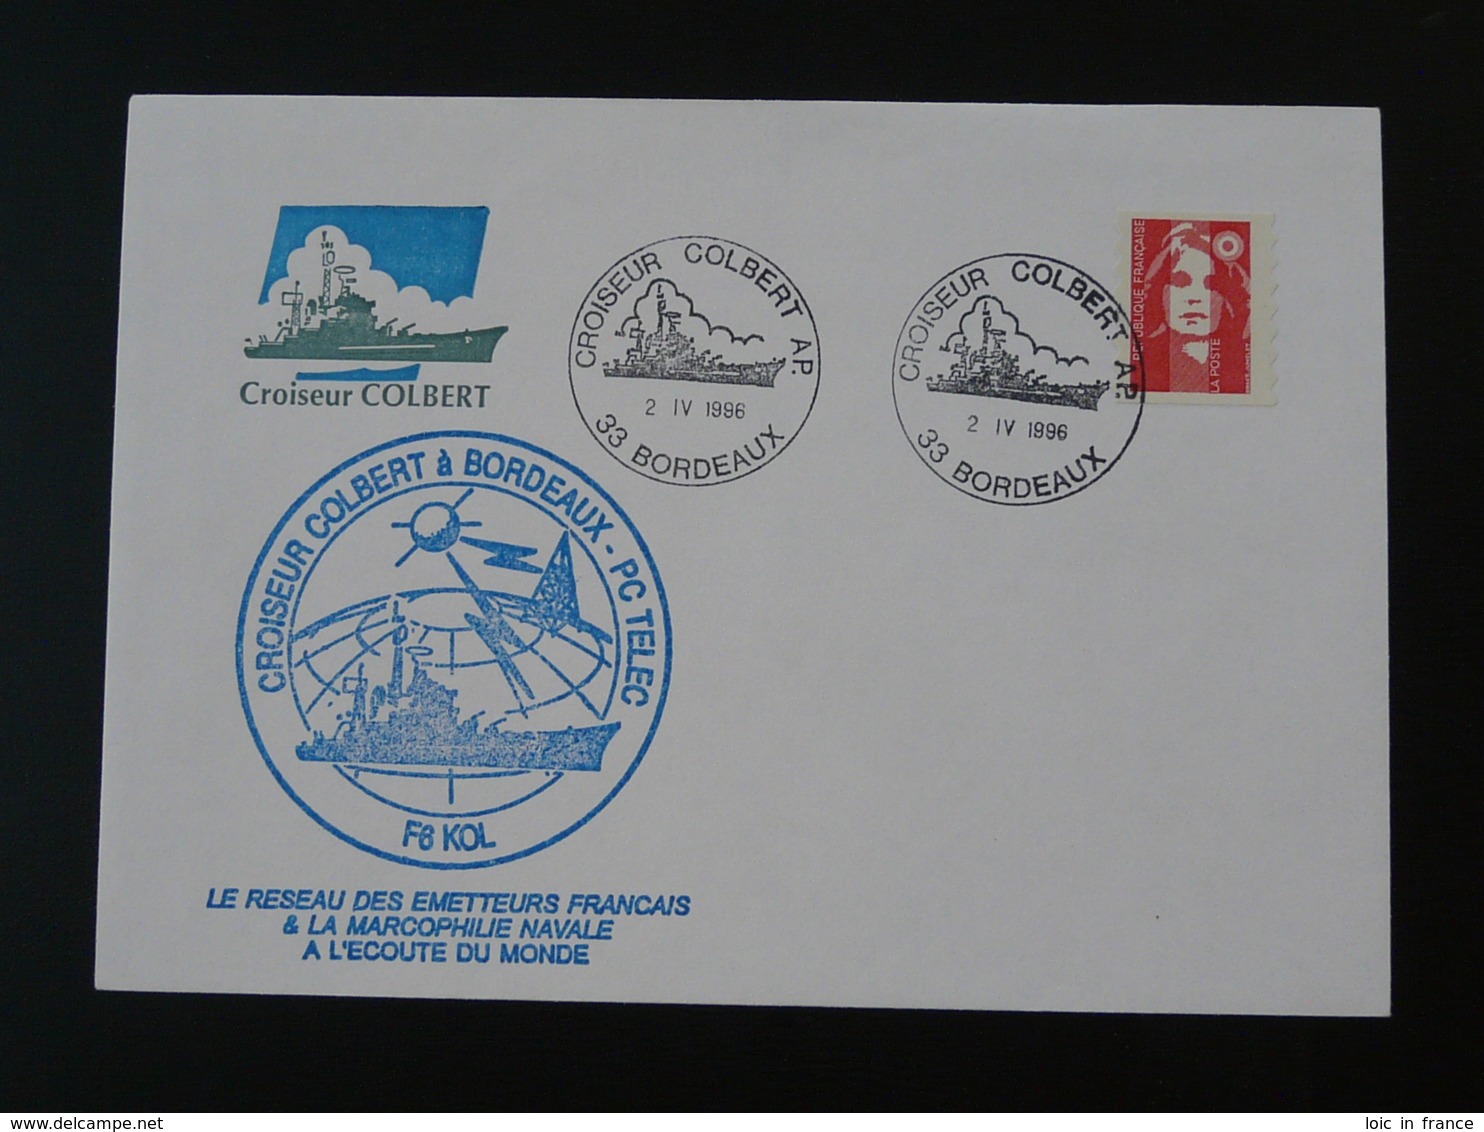 Lettre Commemorative Cover Croiseur Colbert Marcophilie Navale Bordeaux 1996 - Naval Post